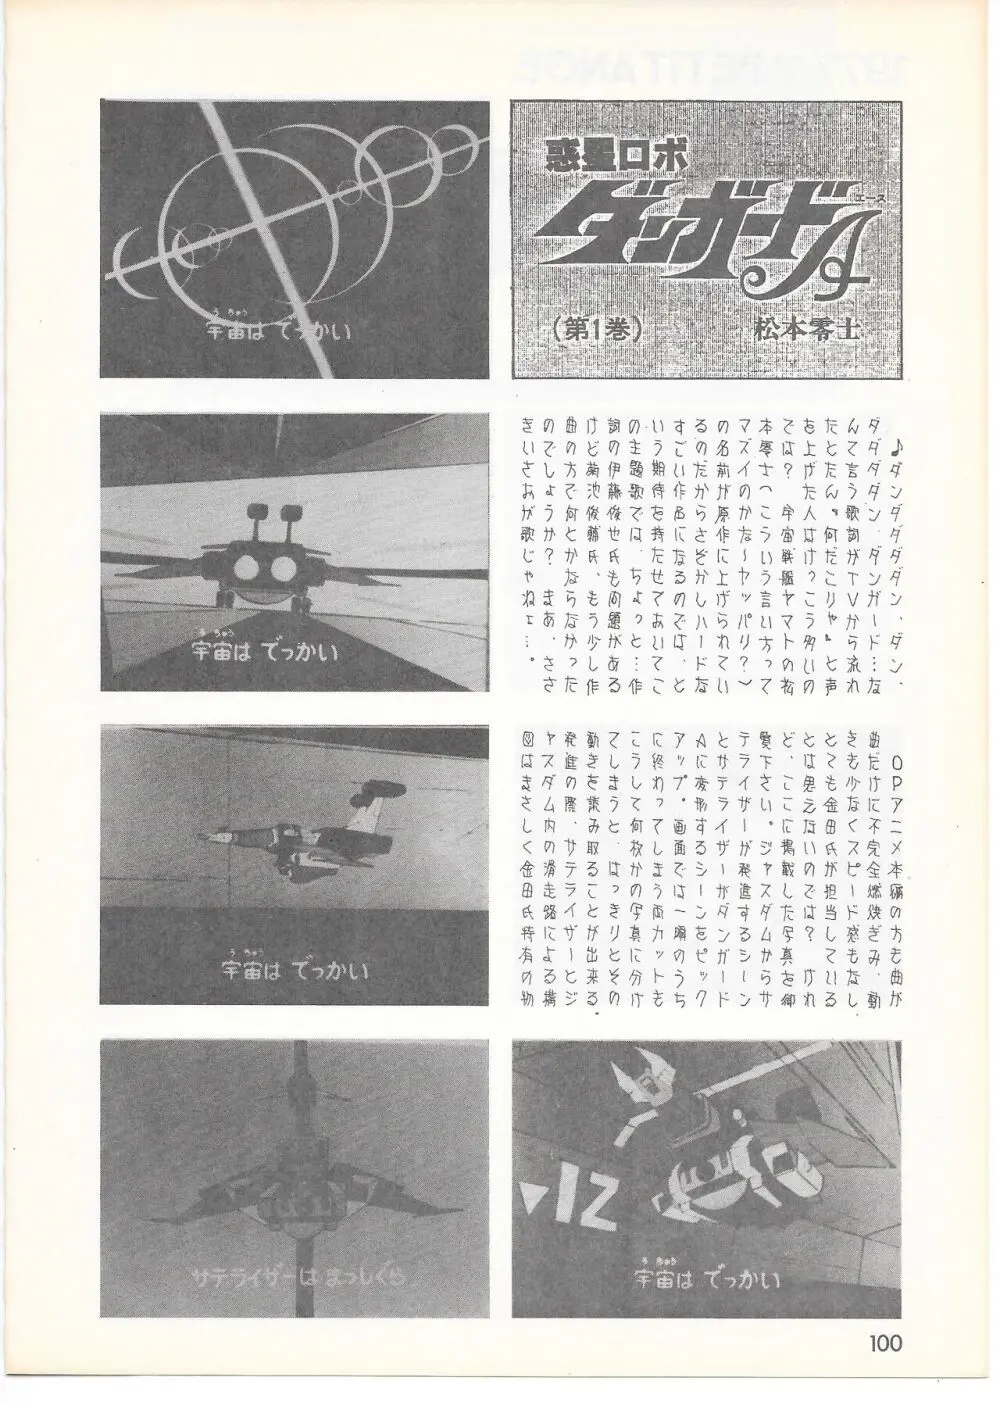 THE ANIMATOR 1 金田伊功特集号 95ページ